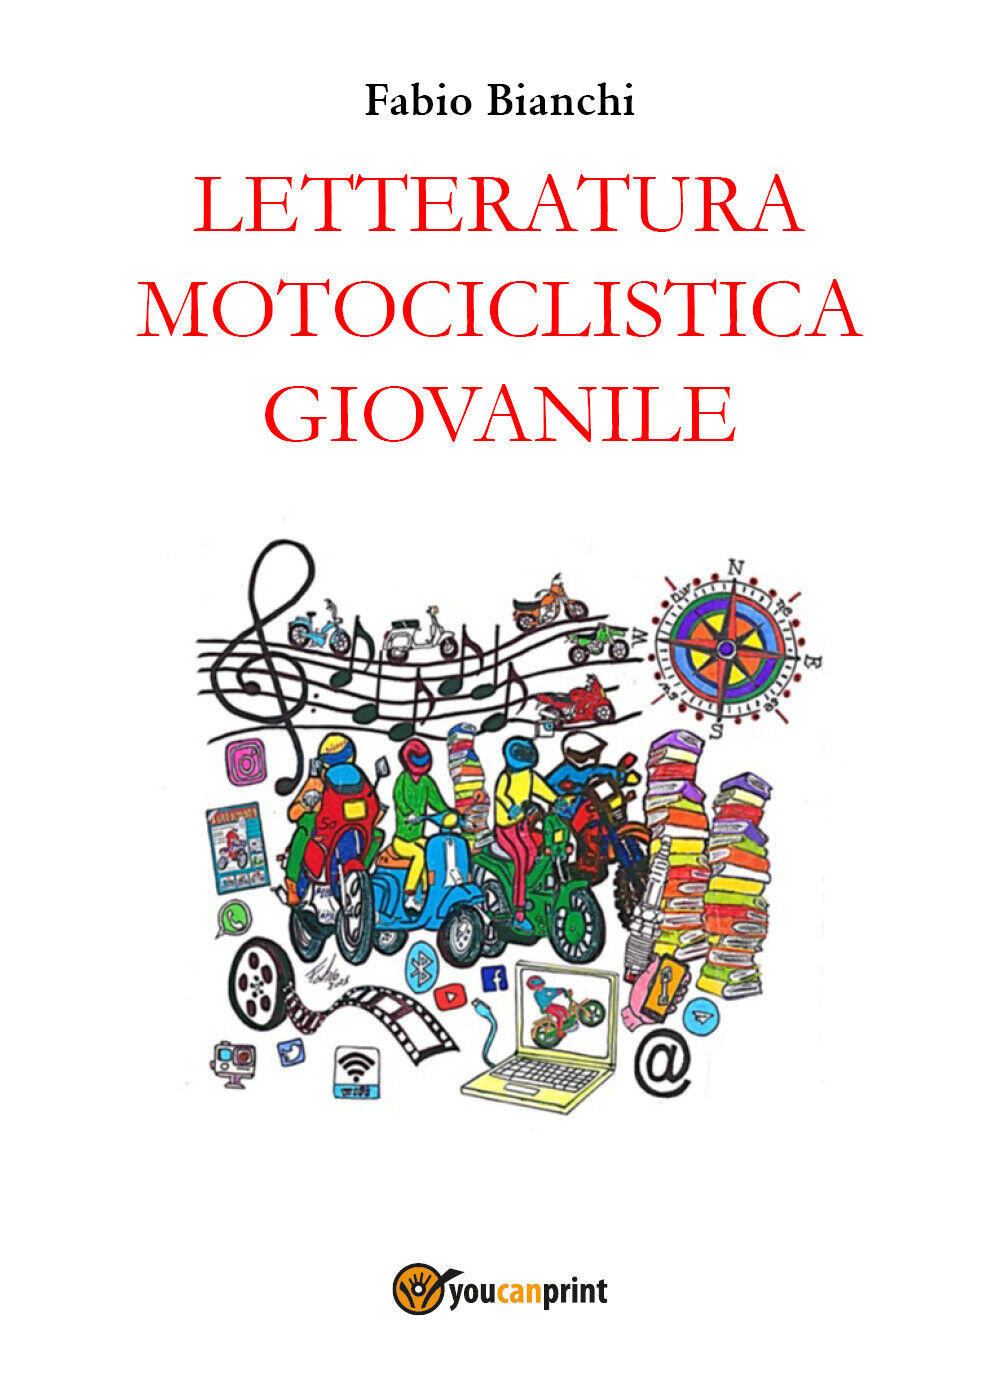 Letteratura motociclistica giovanile di Fabio Bianchi,  2021,  Youcanprint